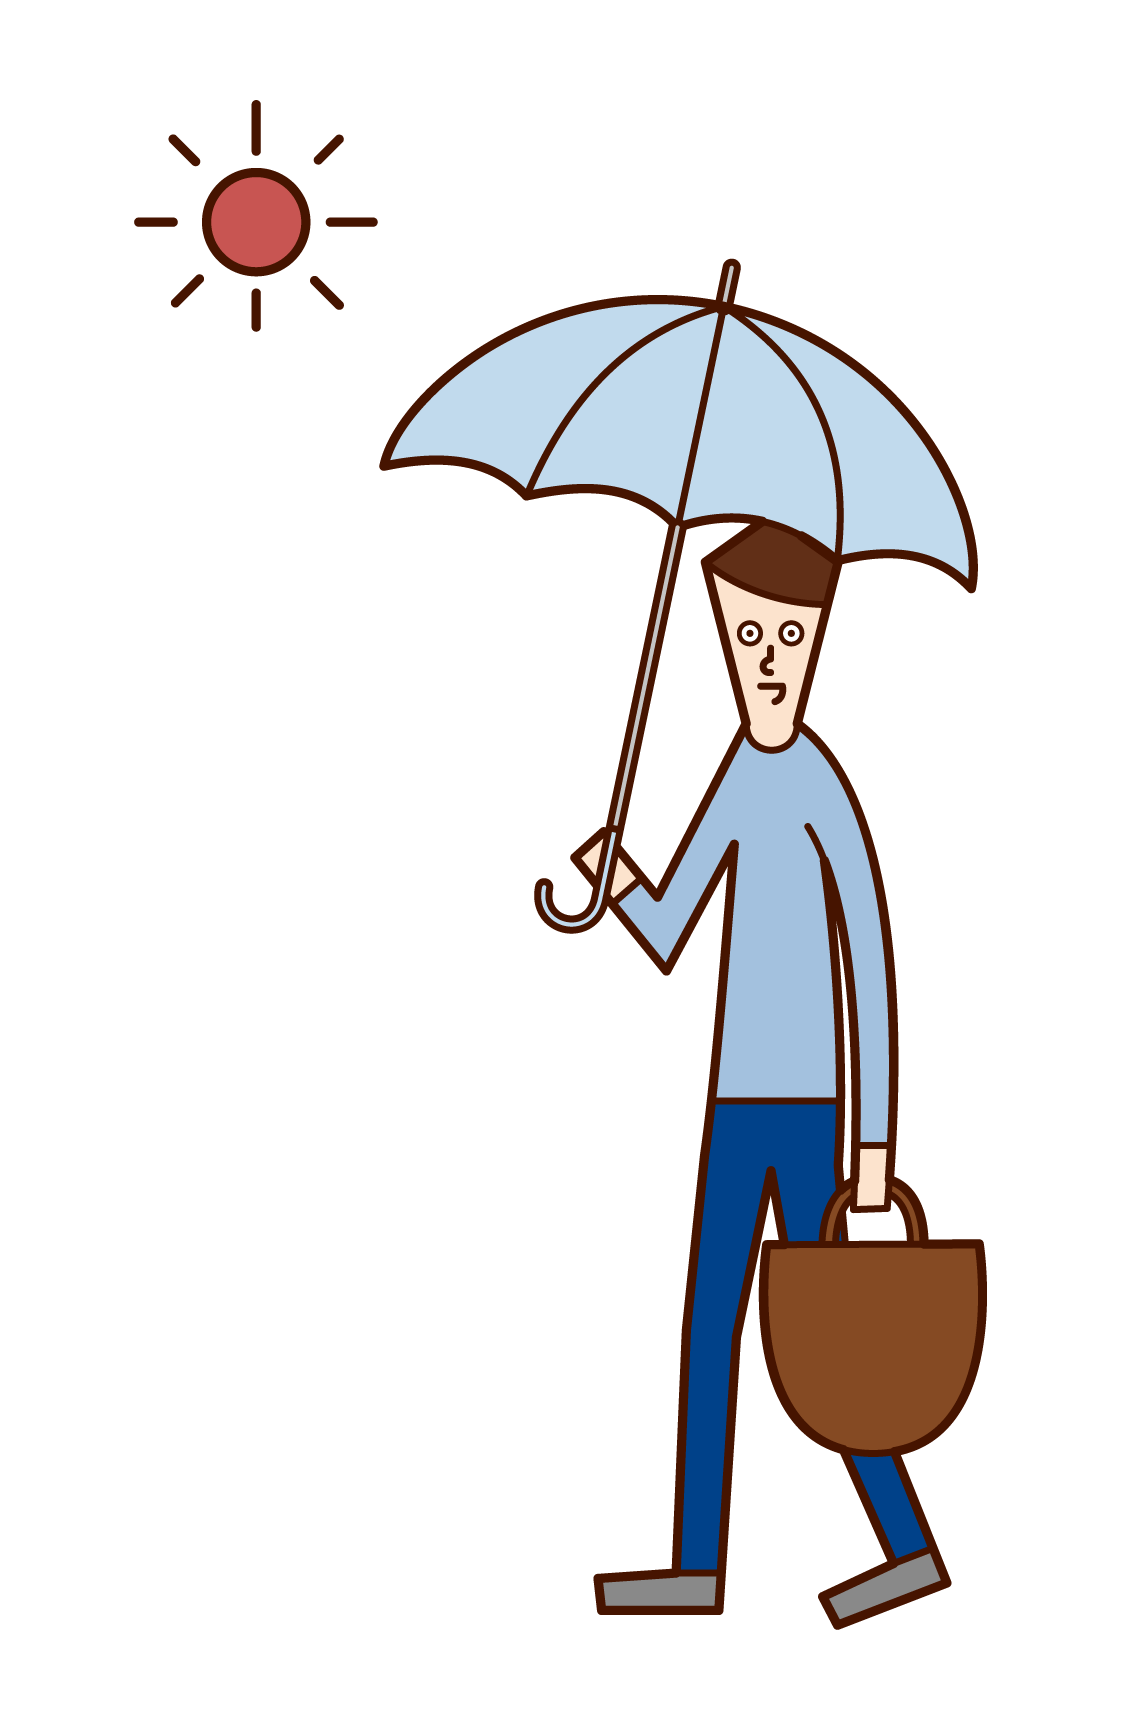 日傘をさして歩く人 男性 のイラスト フリーイラスト素材 Kukukeke ククケケ